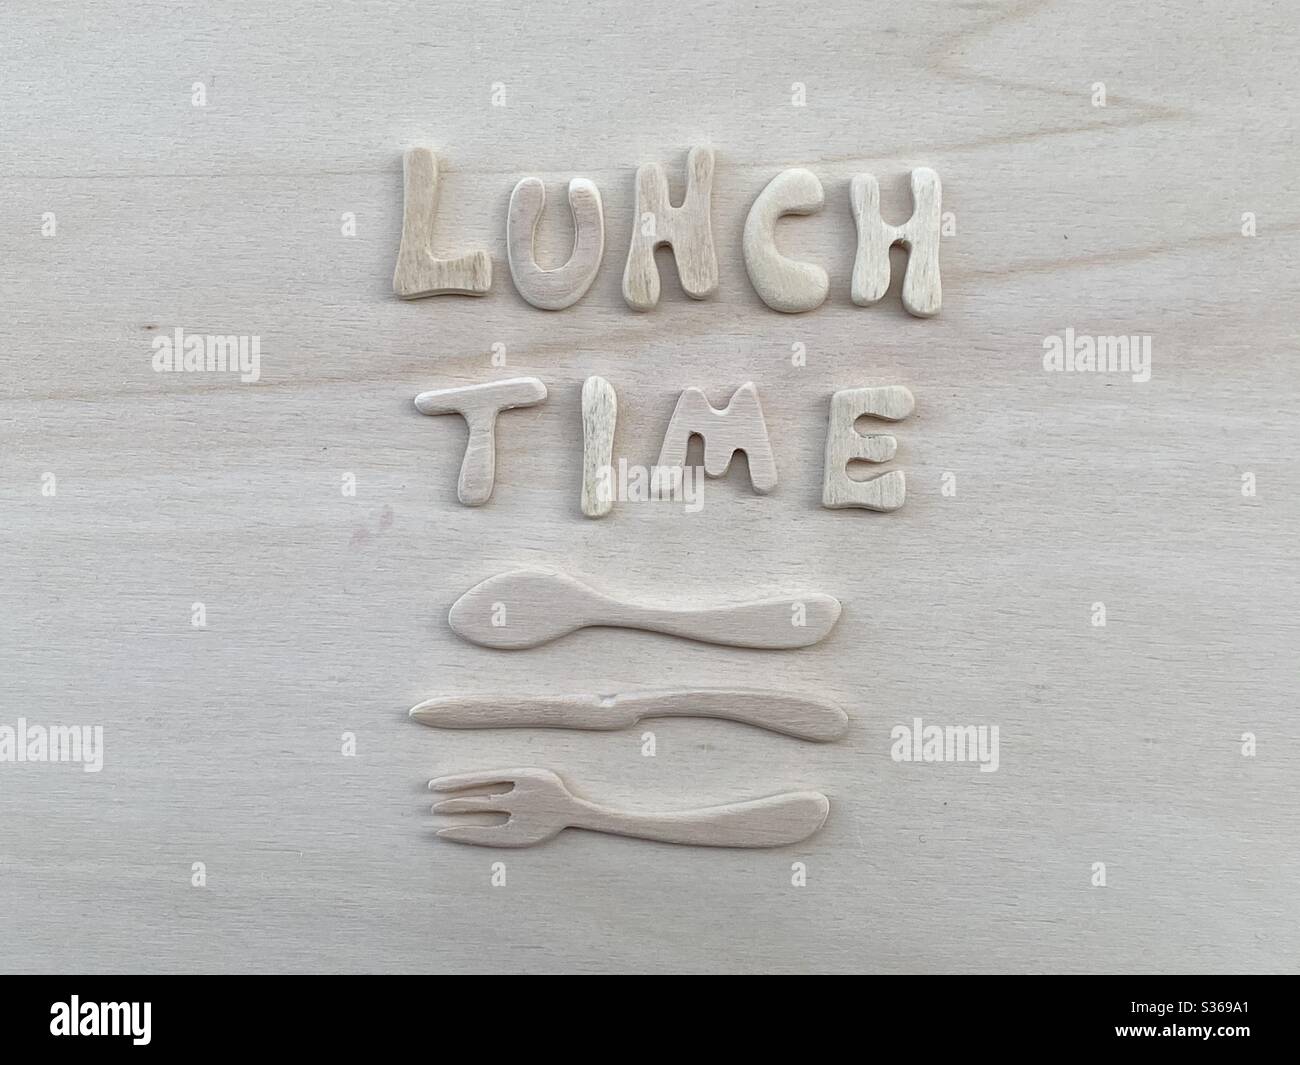 Mittagstext mit künstlerischen Holzbuchstaben mit Holzgabel, Messer und Löffel-Design auf einem Holzbrett Stockfoto